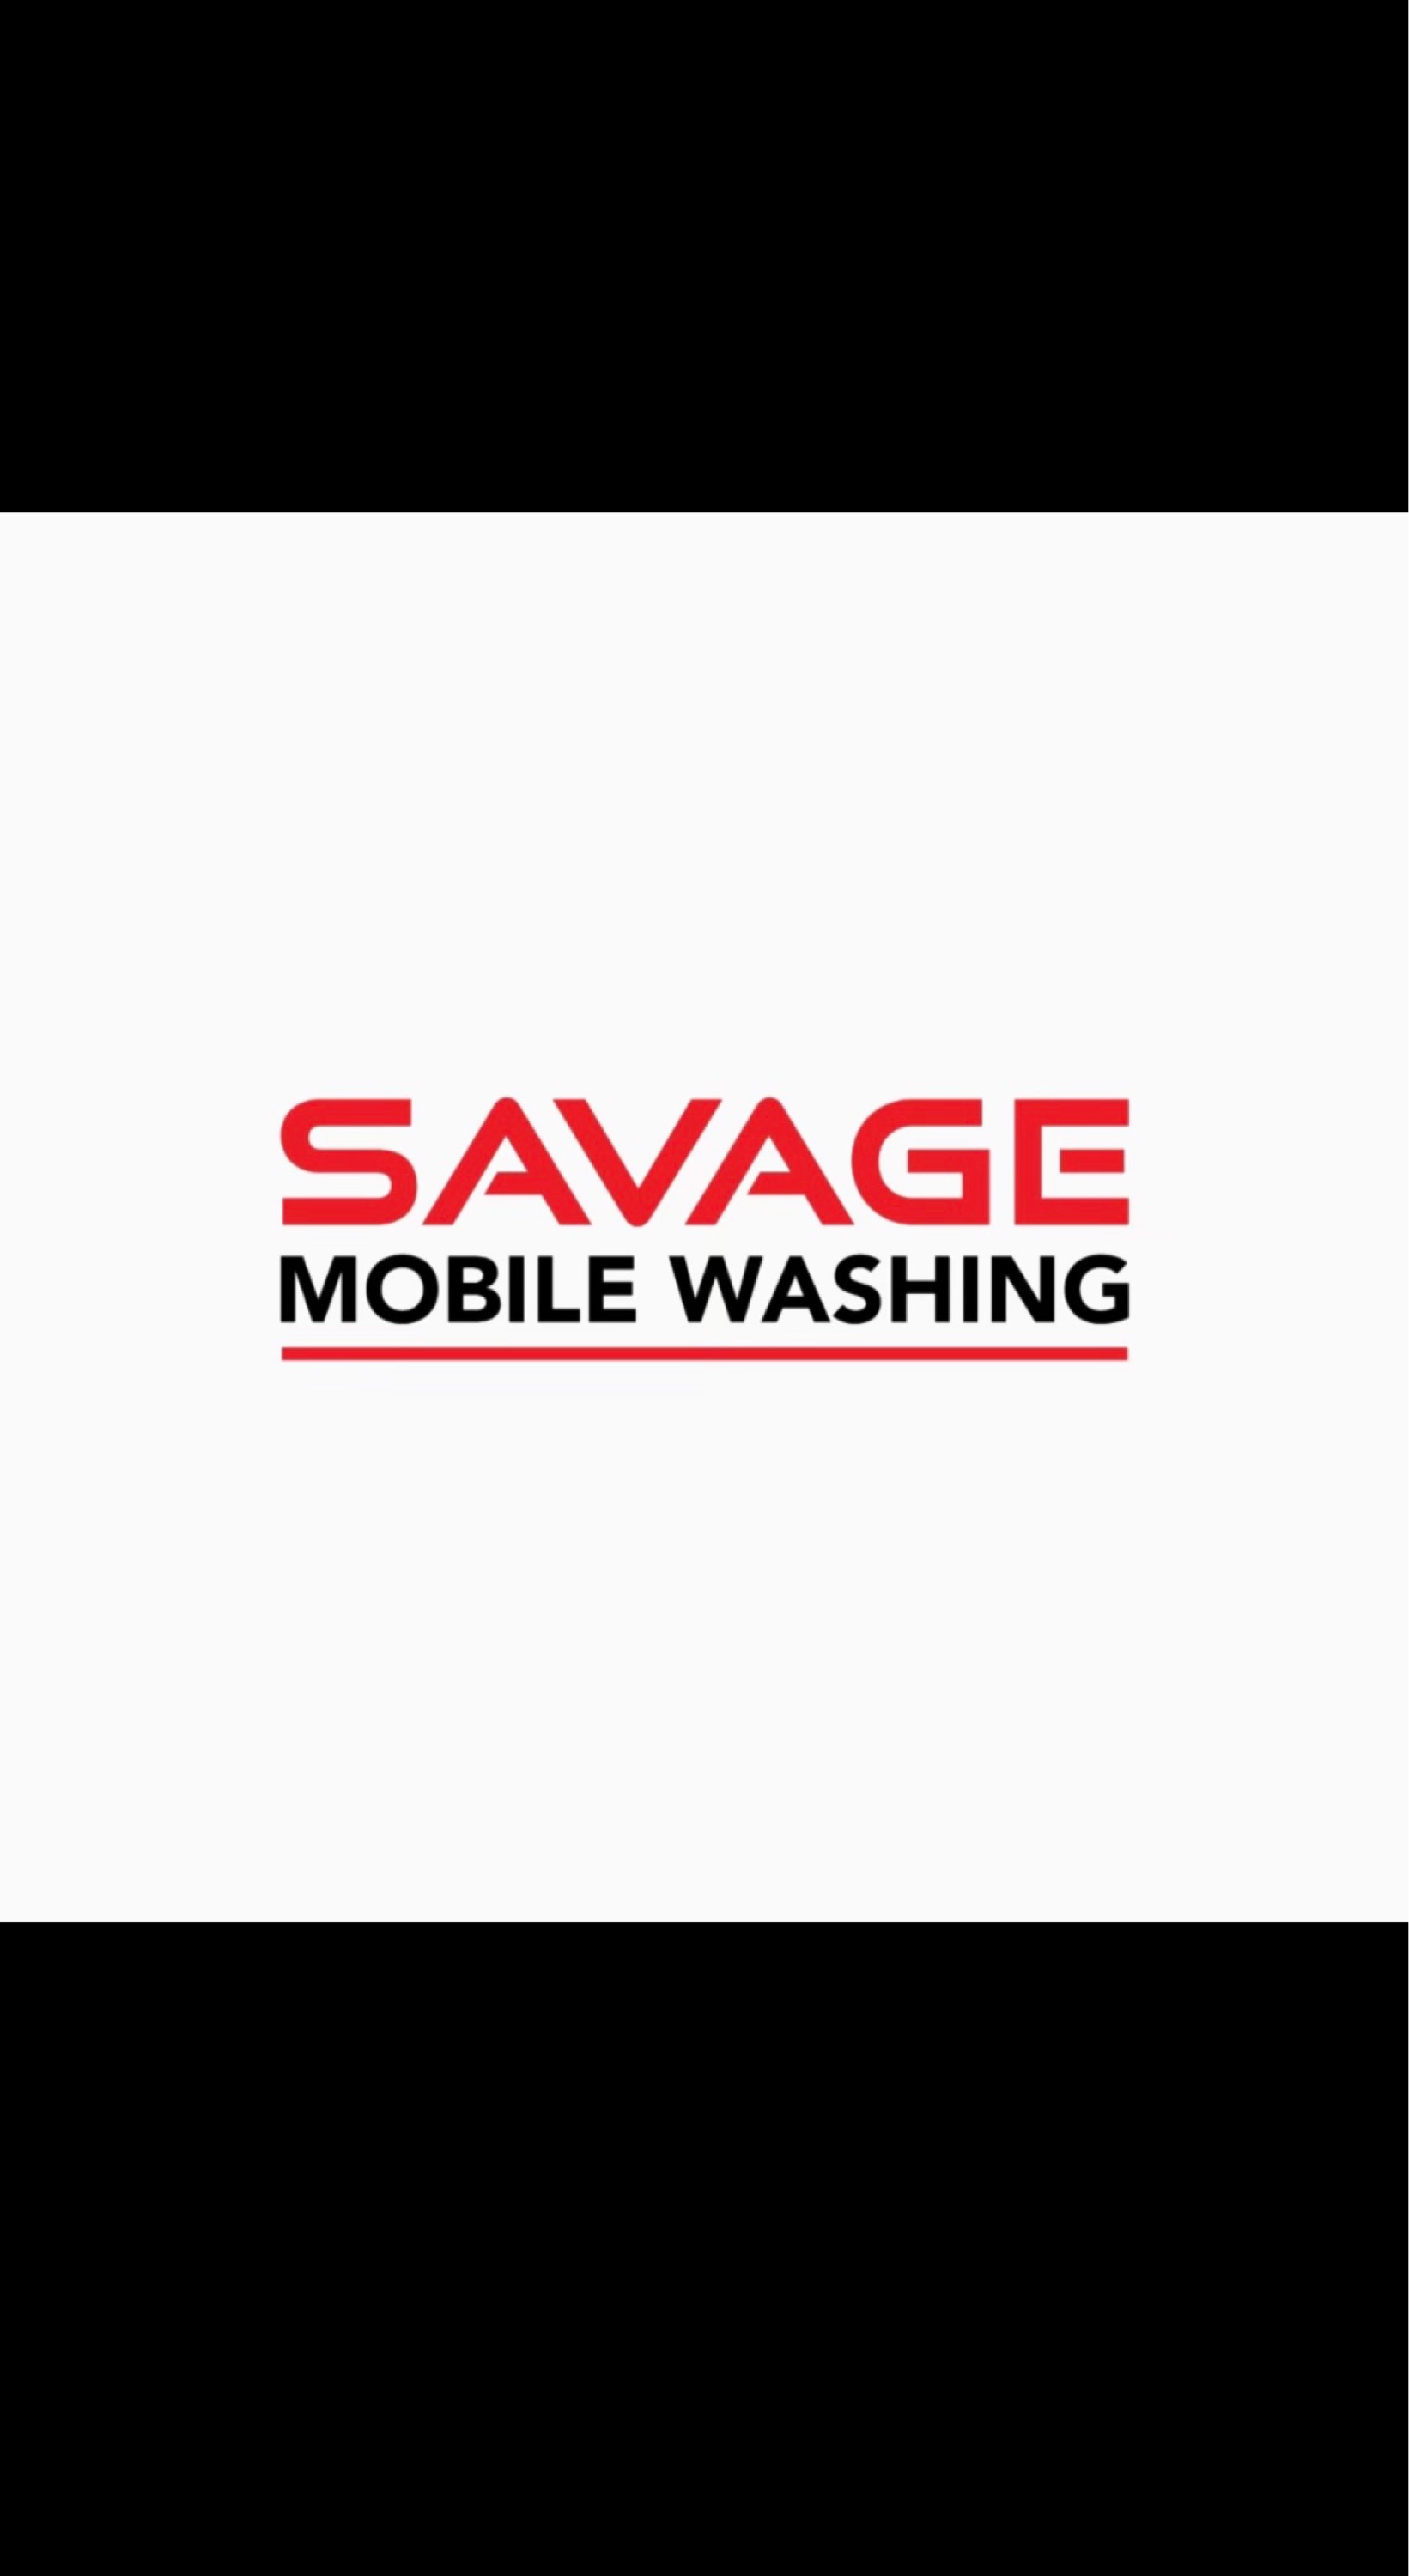 Savage Mobile Washing LLC Logo